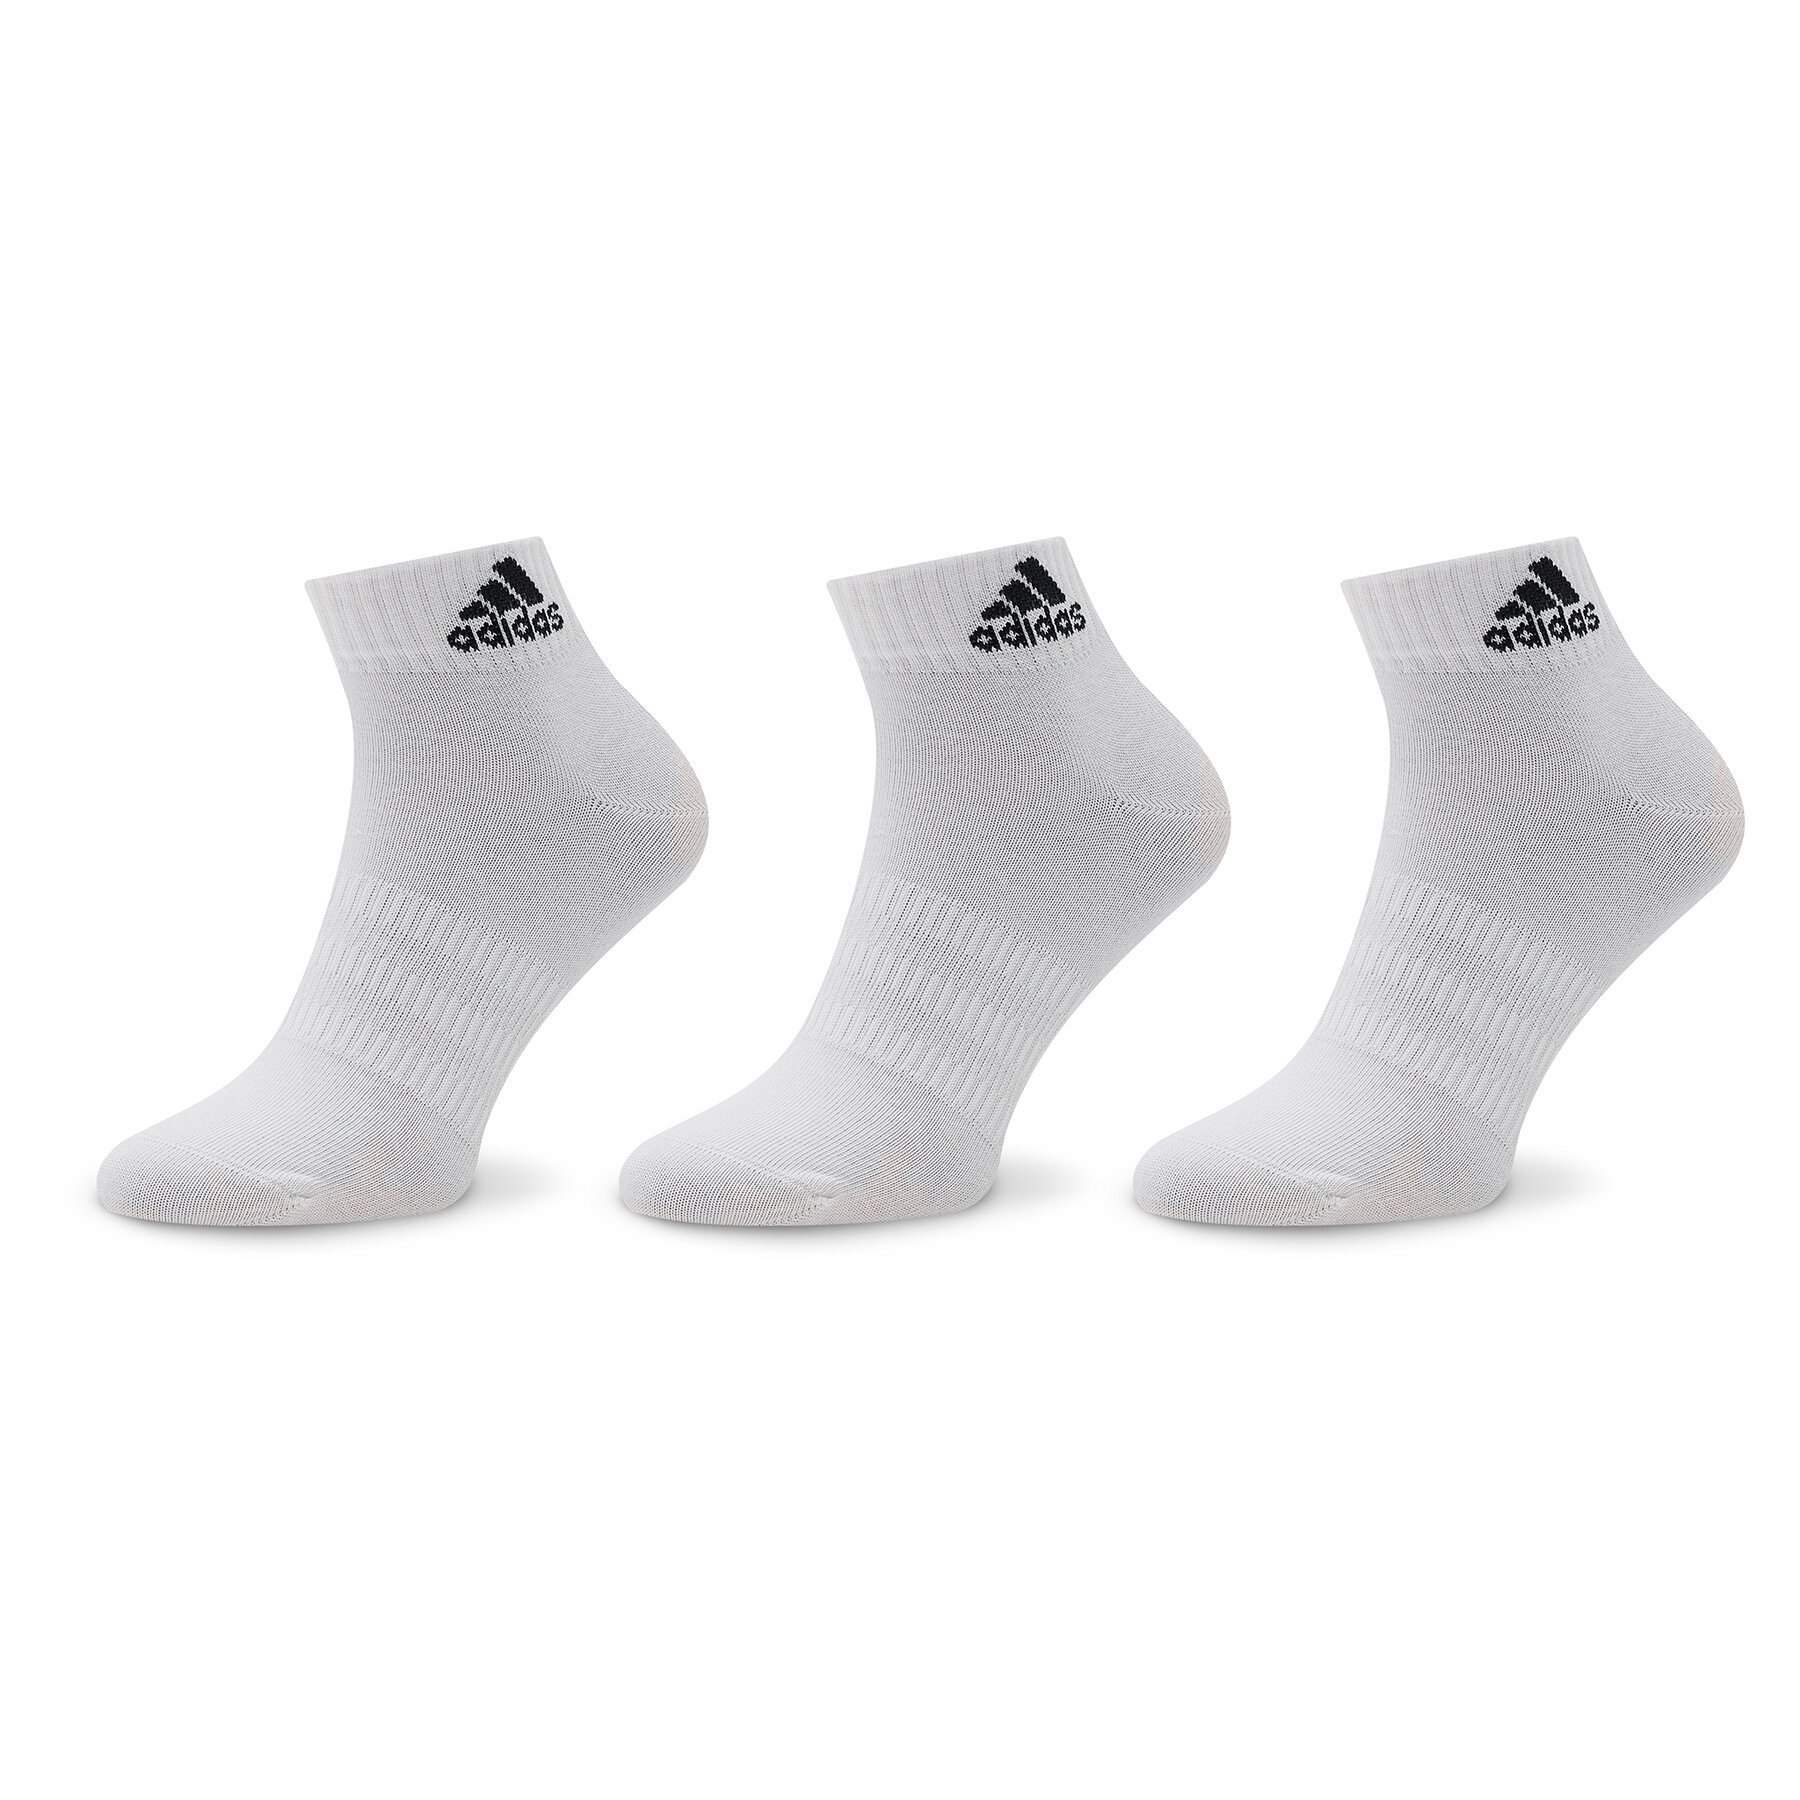 Moteriškų ilgų kojinių komplektas (3 poros) adidas T Spw Ank 3P HT3468 White/Black